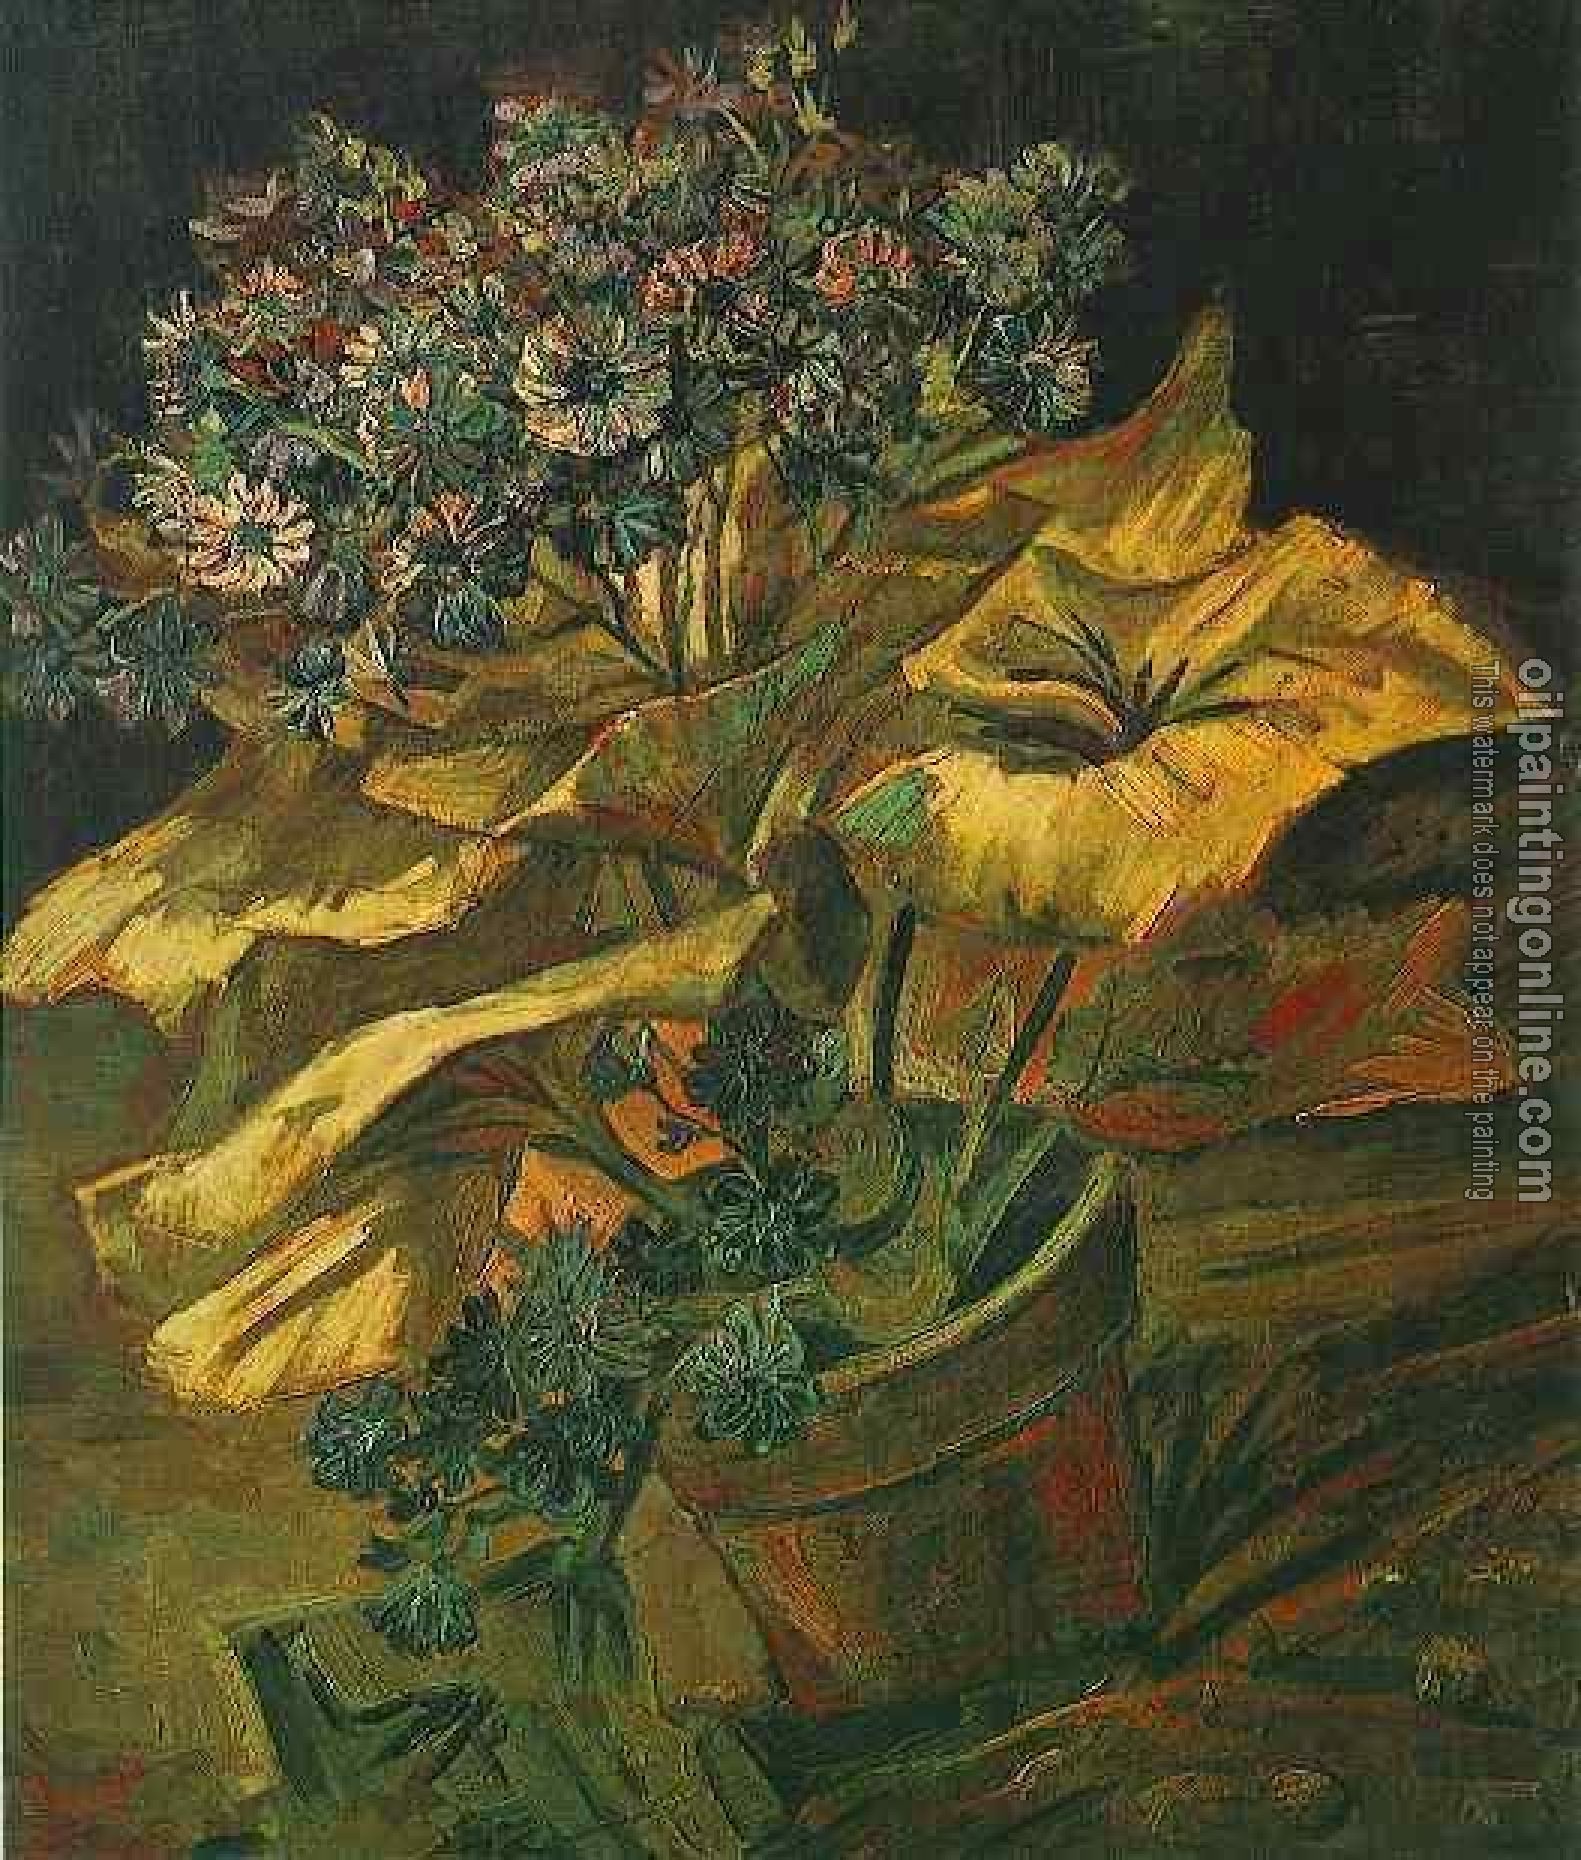 Gogh, Vincent van - Coneraria in a Flowerpot